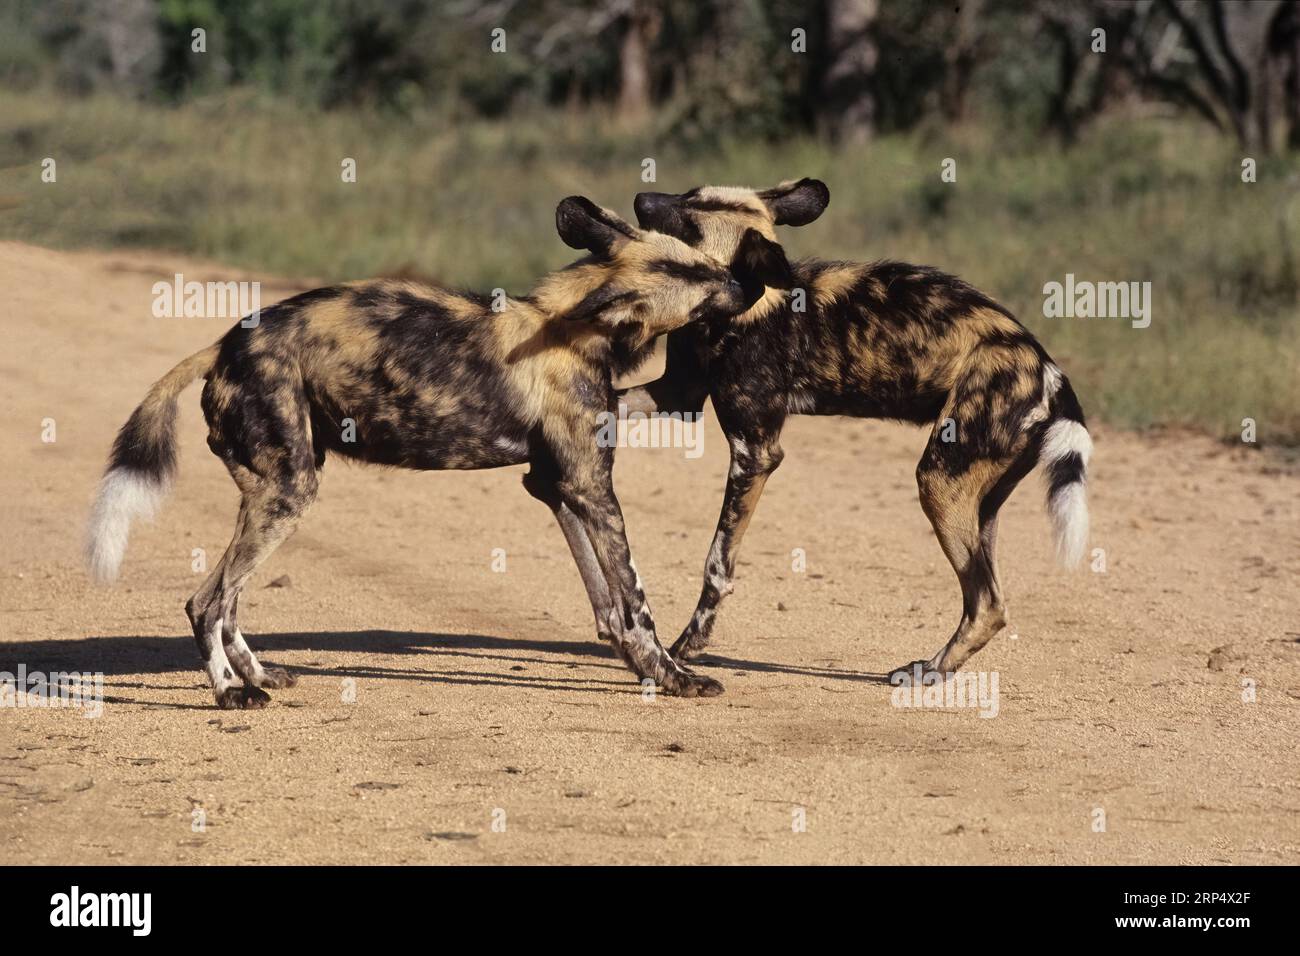 Le chien sauvage d'Afrique (Lycaon pictus), également connu sous le nom de chien peint ou chien de chasse du Cap, est un chien sauvage originaire d'Afrique subsaharienne. Banque D'Images